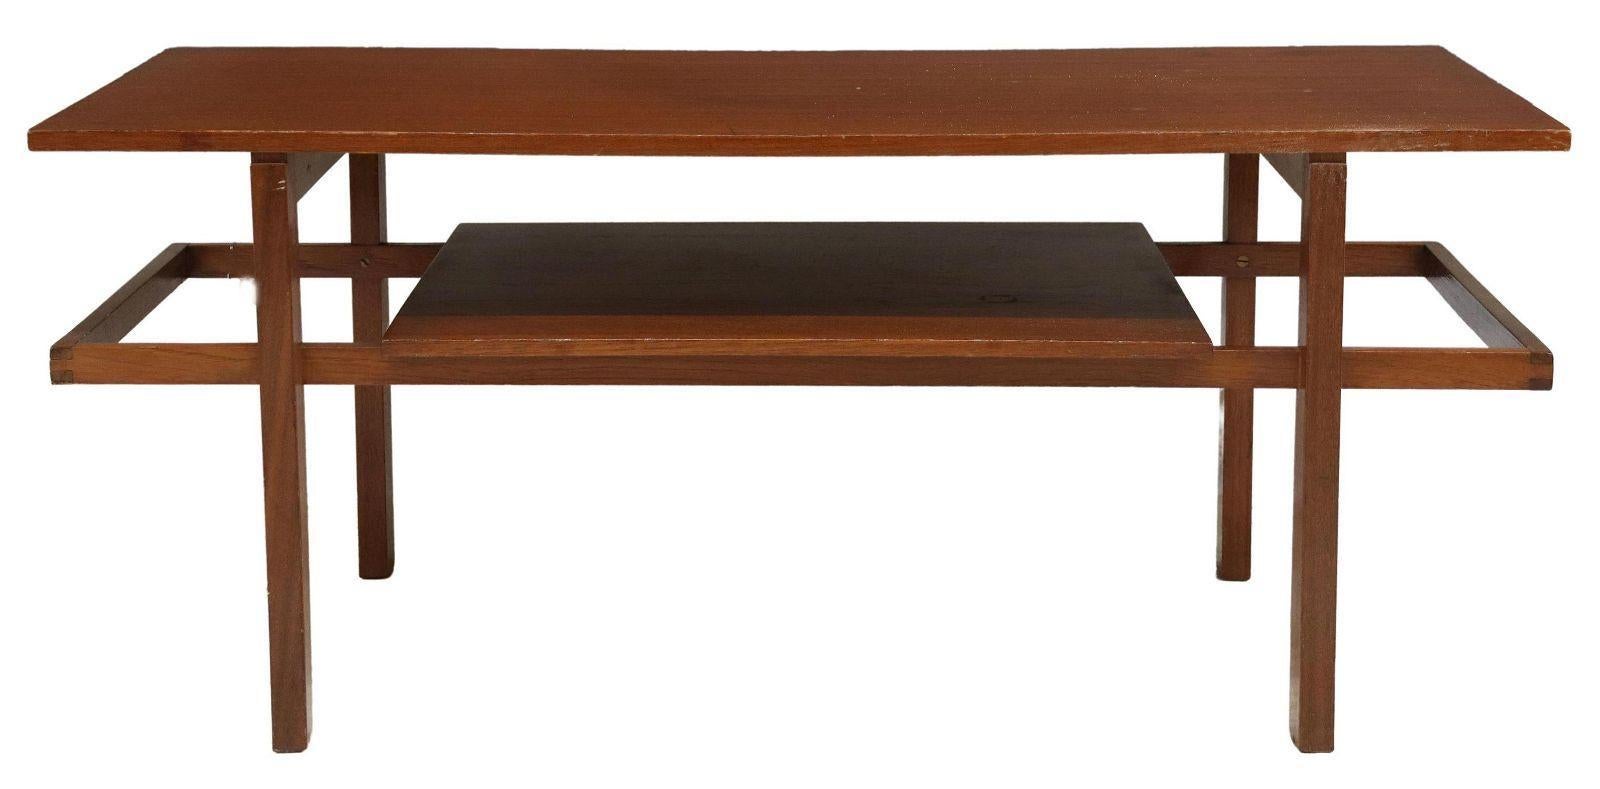 Table basse italienne en teck moderne du milieu du siècle, c.1960. Cette table présente un plateau rectangulaire, surmontant un plateau médian, reposant sur des pieds articulés.

Dimensions
environ 18.75 